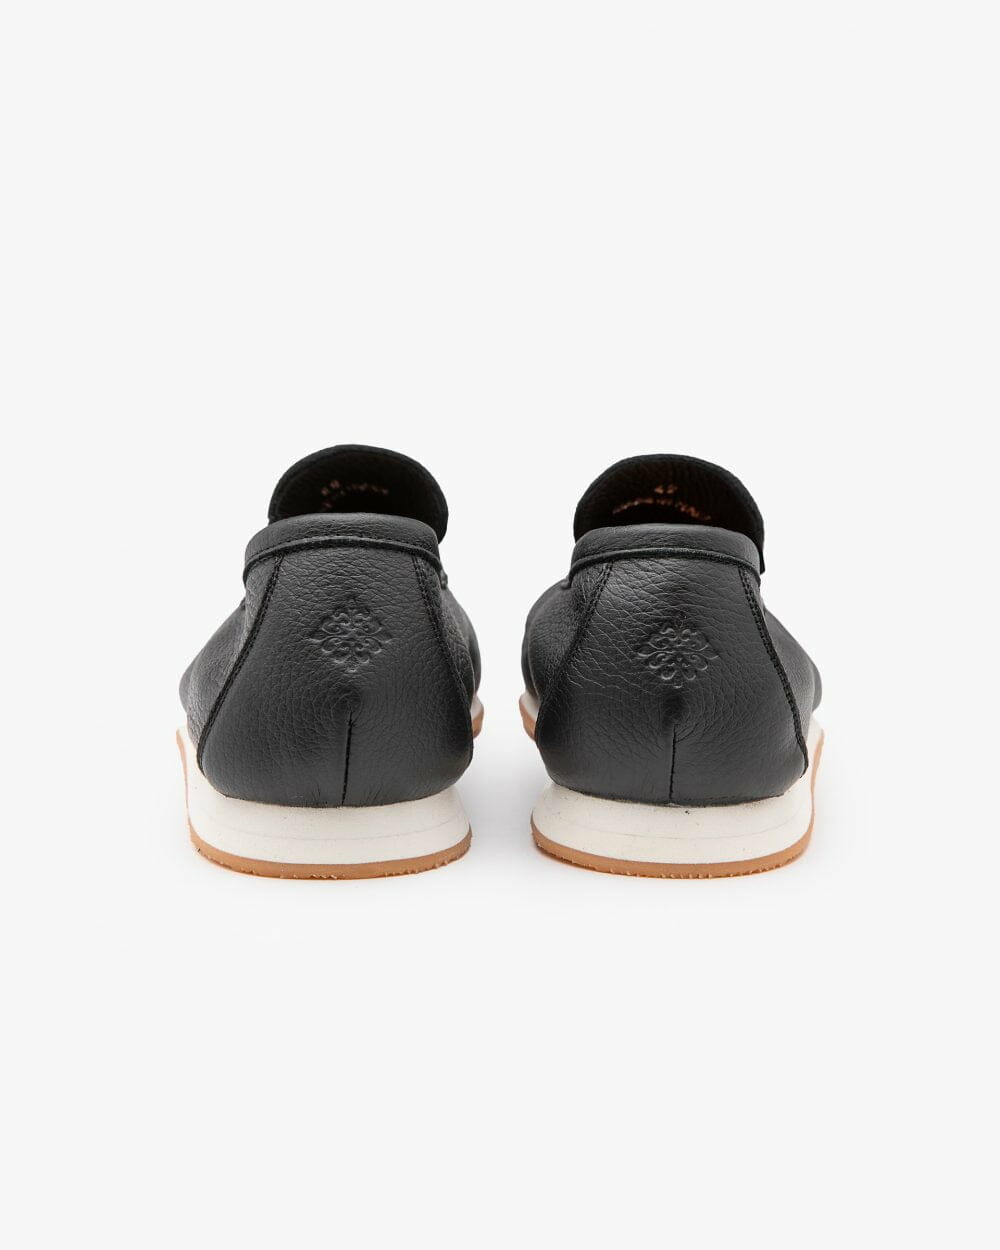 Aq-BEACH-LS-deer-luxe-black-heel